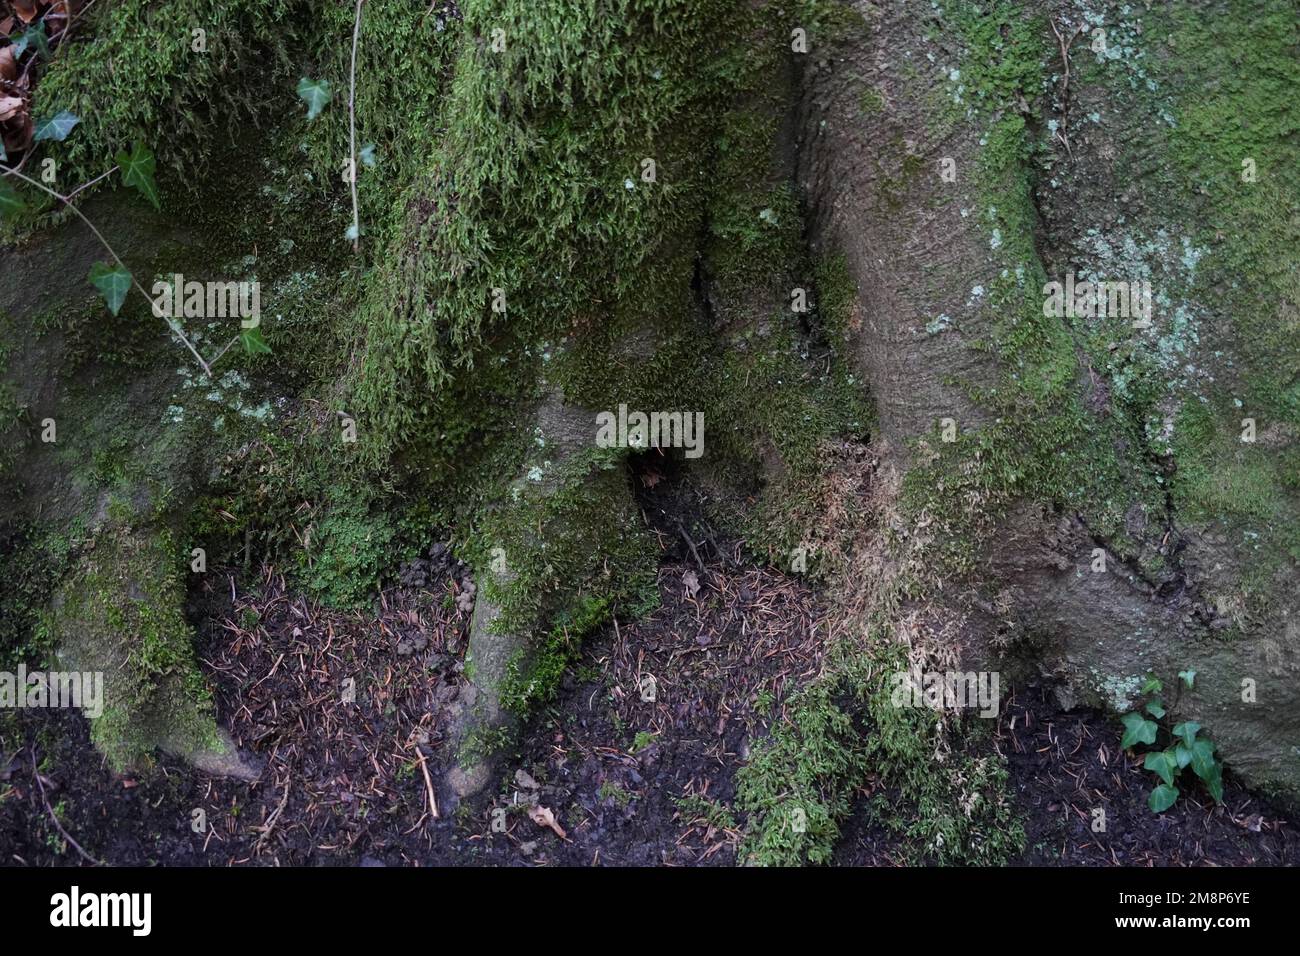 Tronc d'arbre capturé en détail au niveau du sol. Il est cultivé avec de la mousse vert foncé. Il convient comme fond de thème de la nature. Banque D'Images